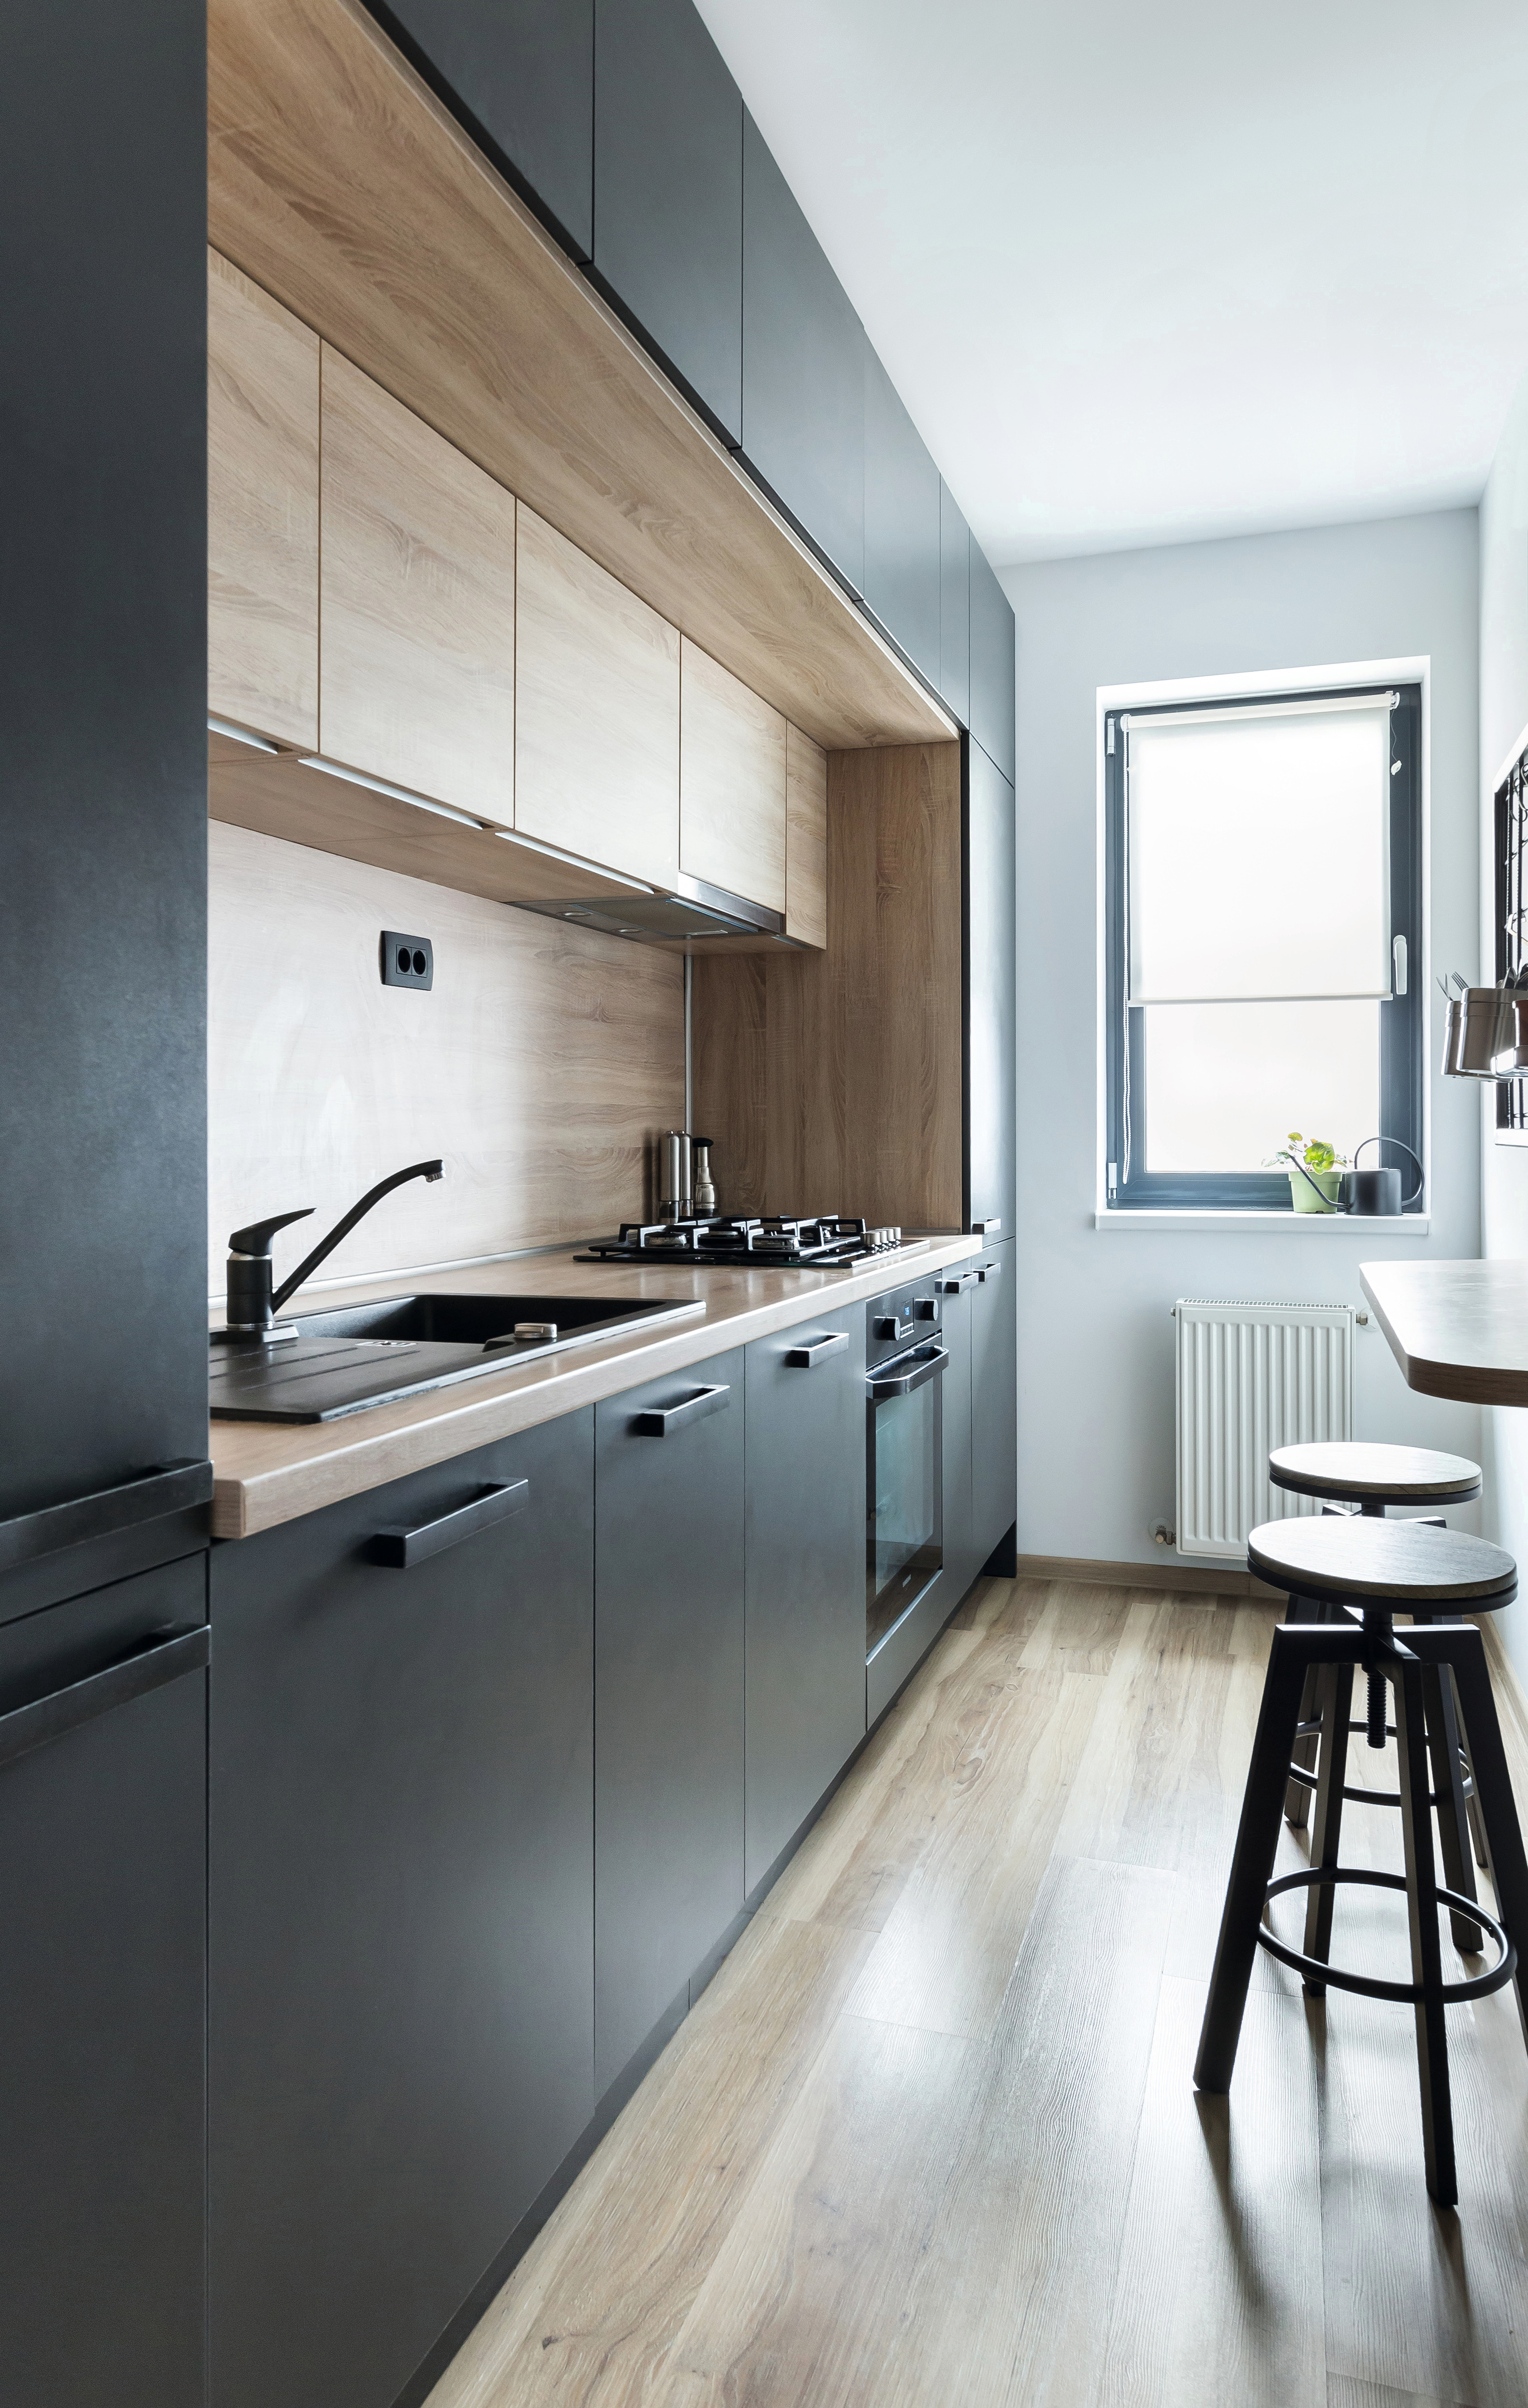  La giusta scelta di colori e la disposizione geometrica creano una cucina dal look moderno.